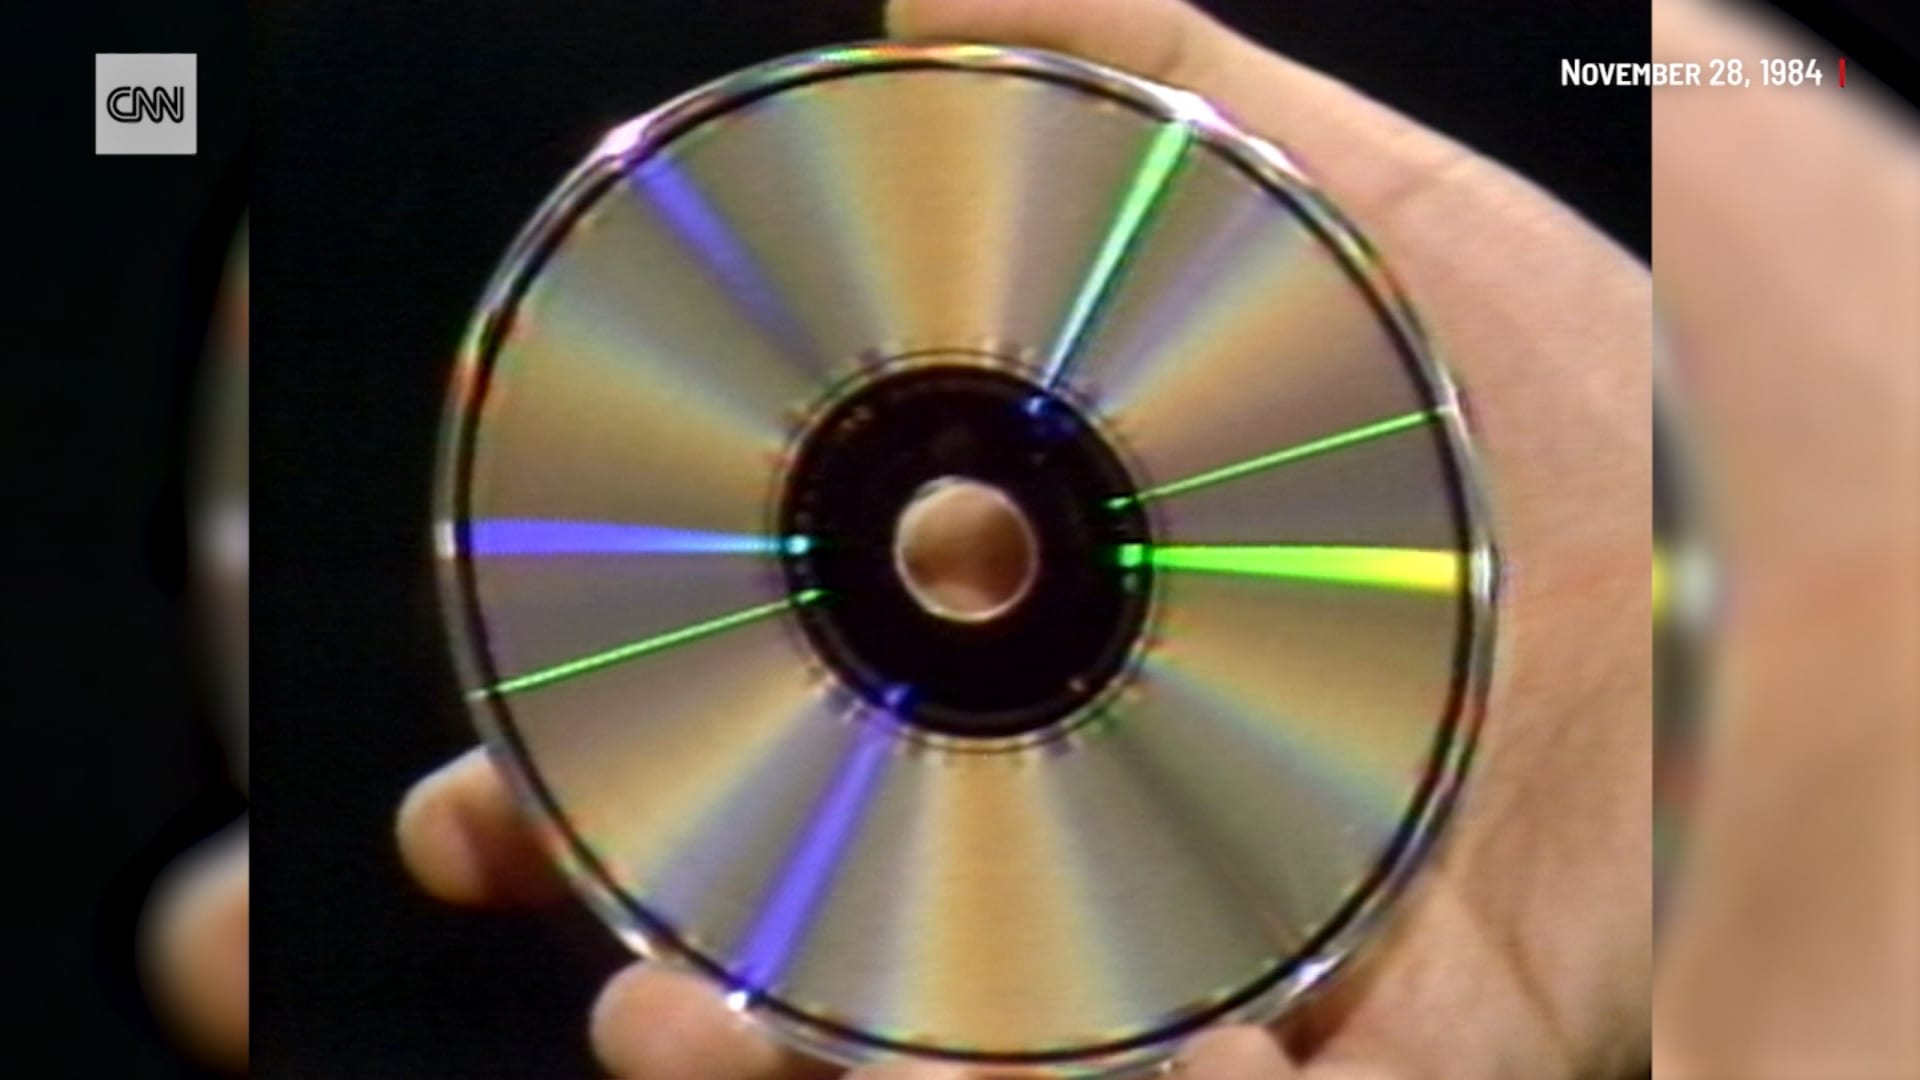 من "الخزنة": شاهد تغطية CNN لأول قرص "CD"مضغوط تم إنتاجه قبل 40 عامًا